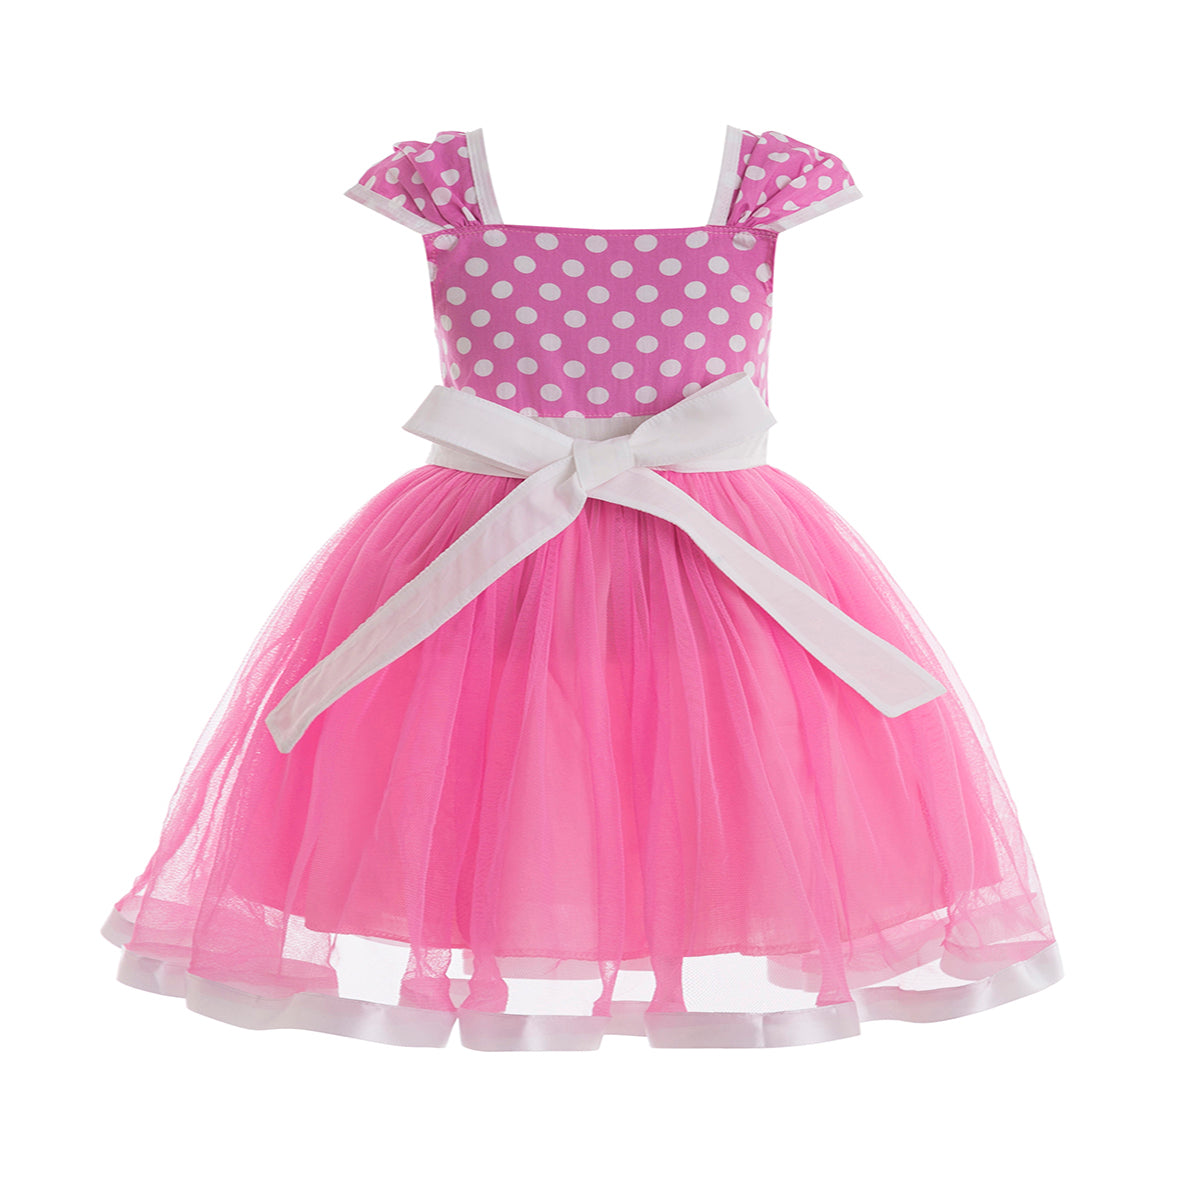 Minnie Pink inspired Tutu dress